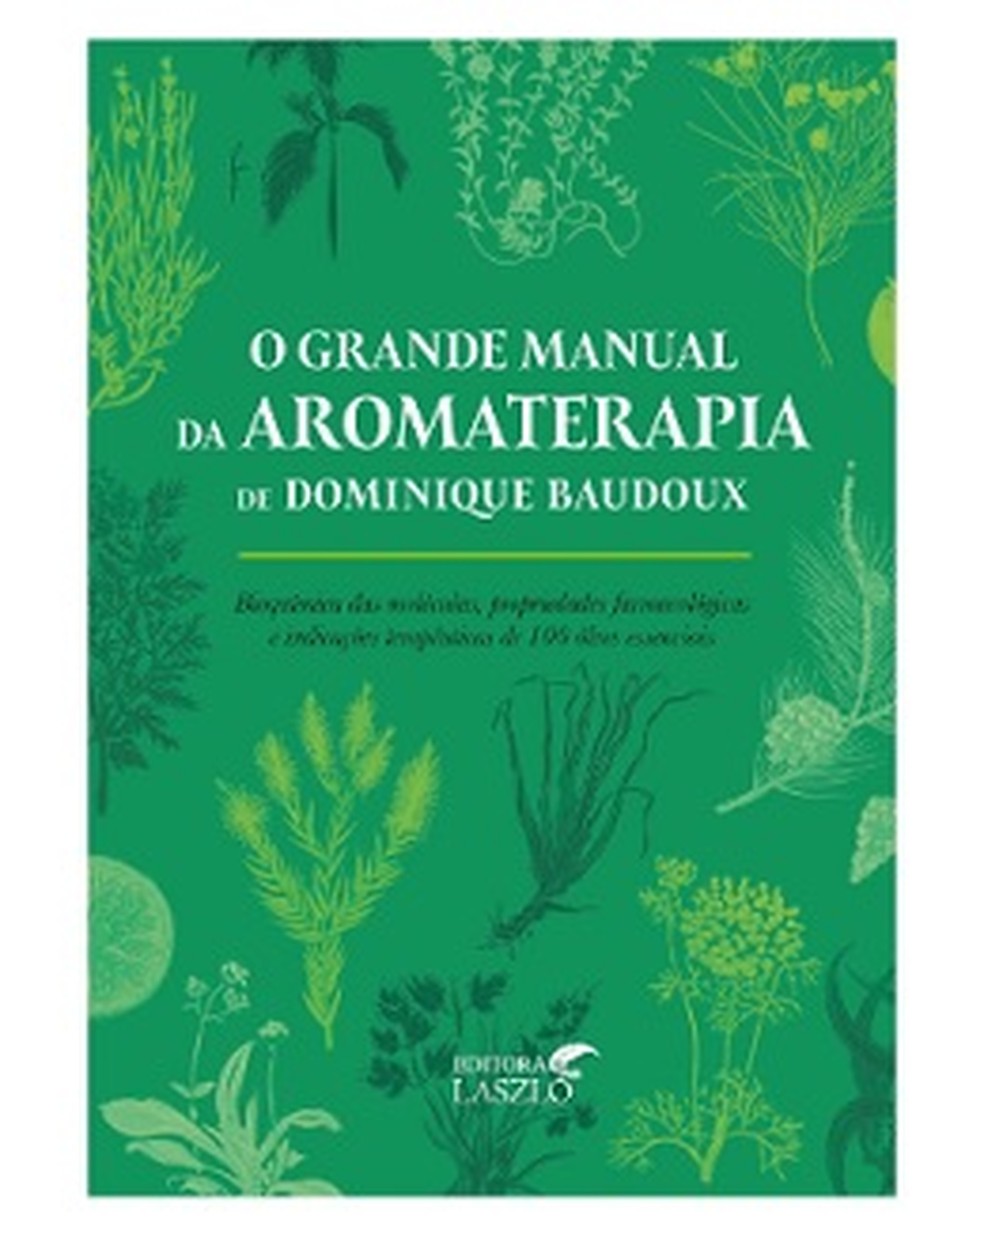 Manual da aromaterapia - disponível na Amazon — Foto: Divulgação